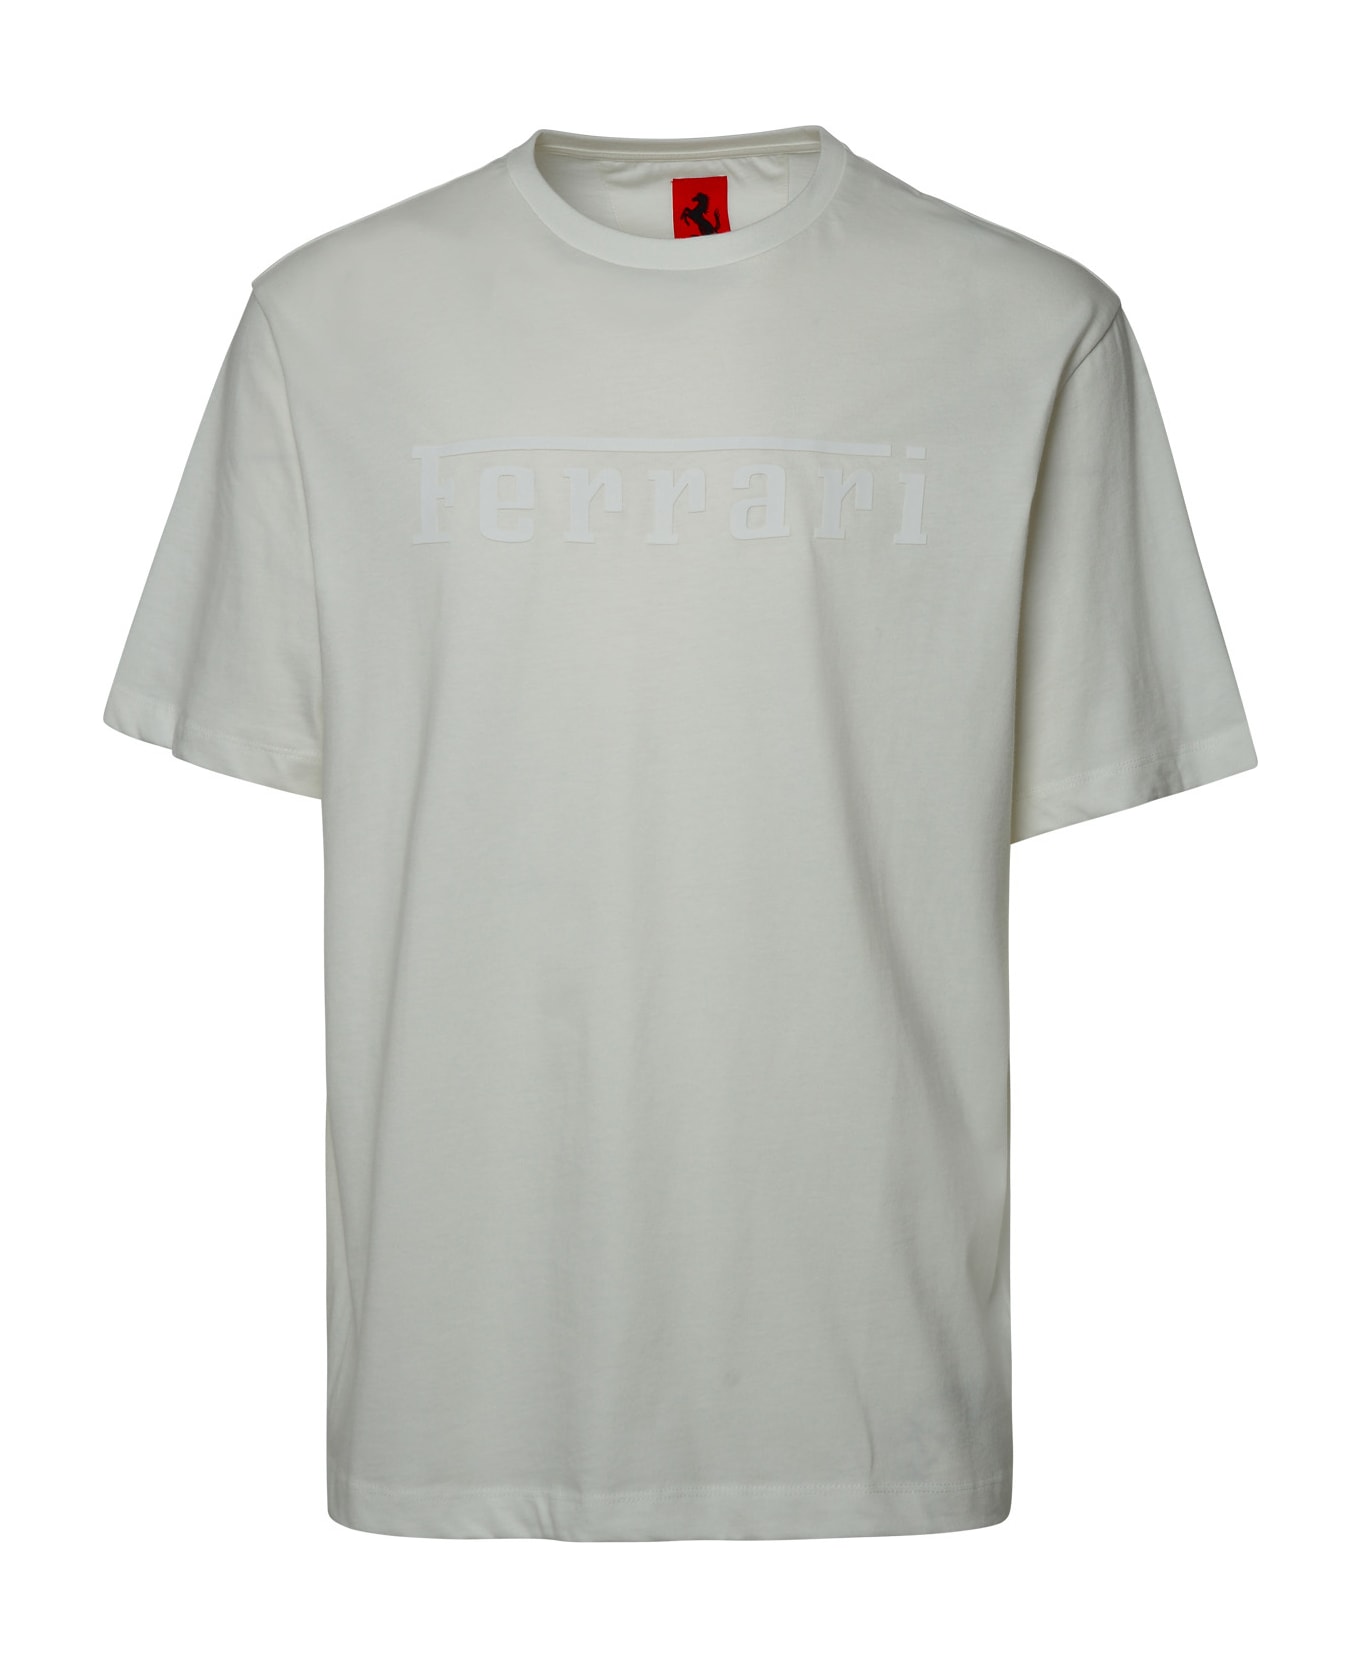 Ferrari White Cotton T-shirt - WHITE